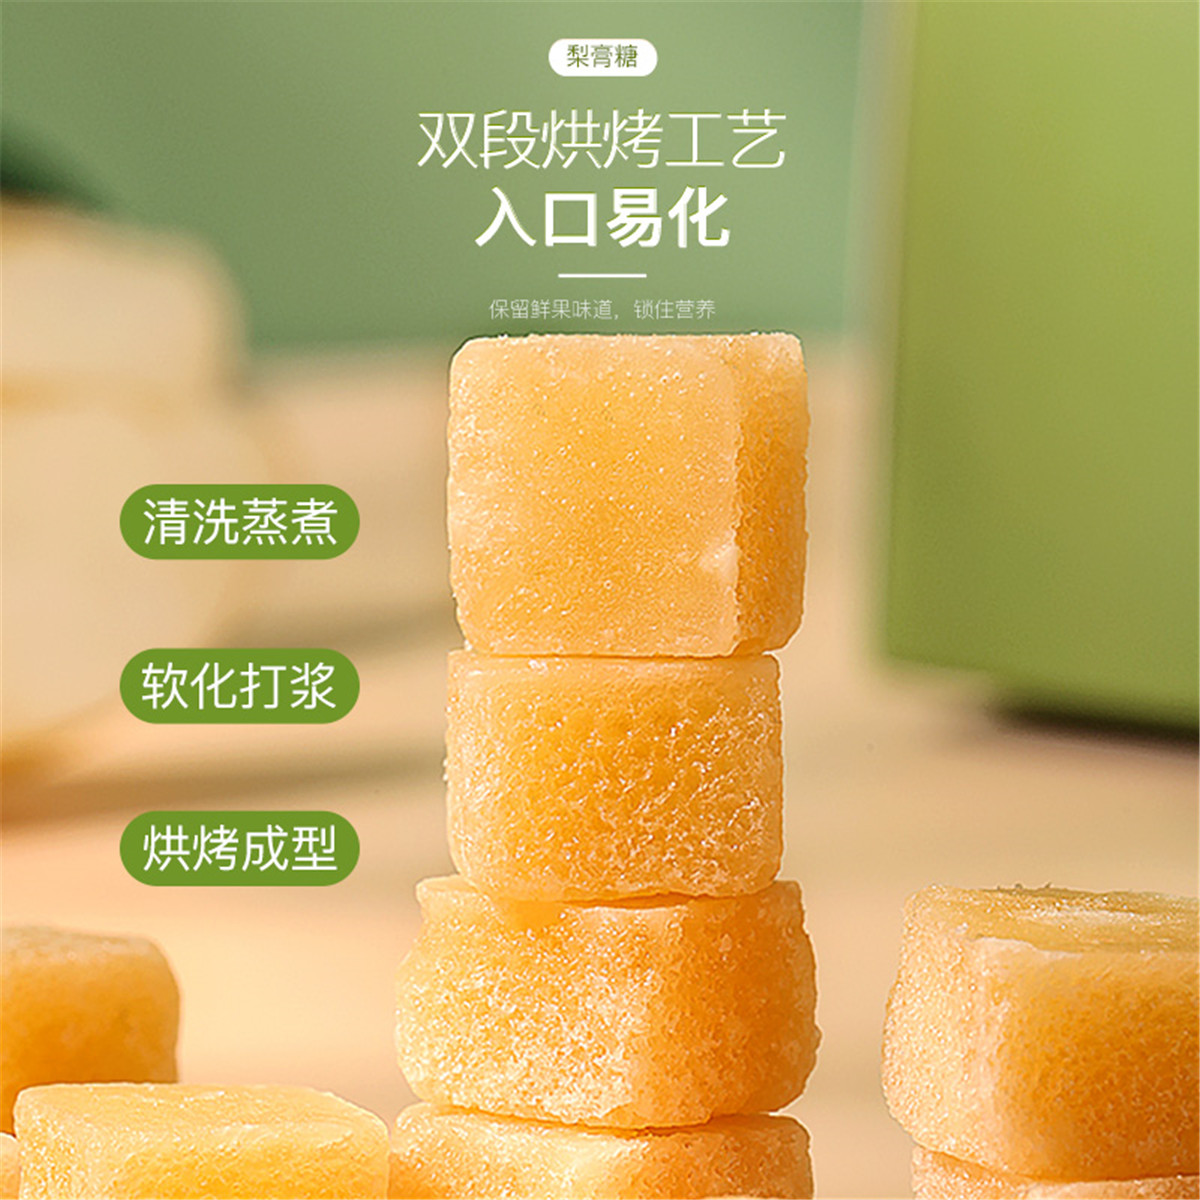 【6元5件】福东海梨膏糖10g罗汉果清凉薄荷糖板砂糖独立包装 - 图0